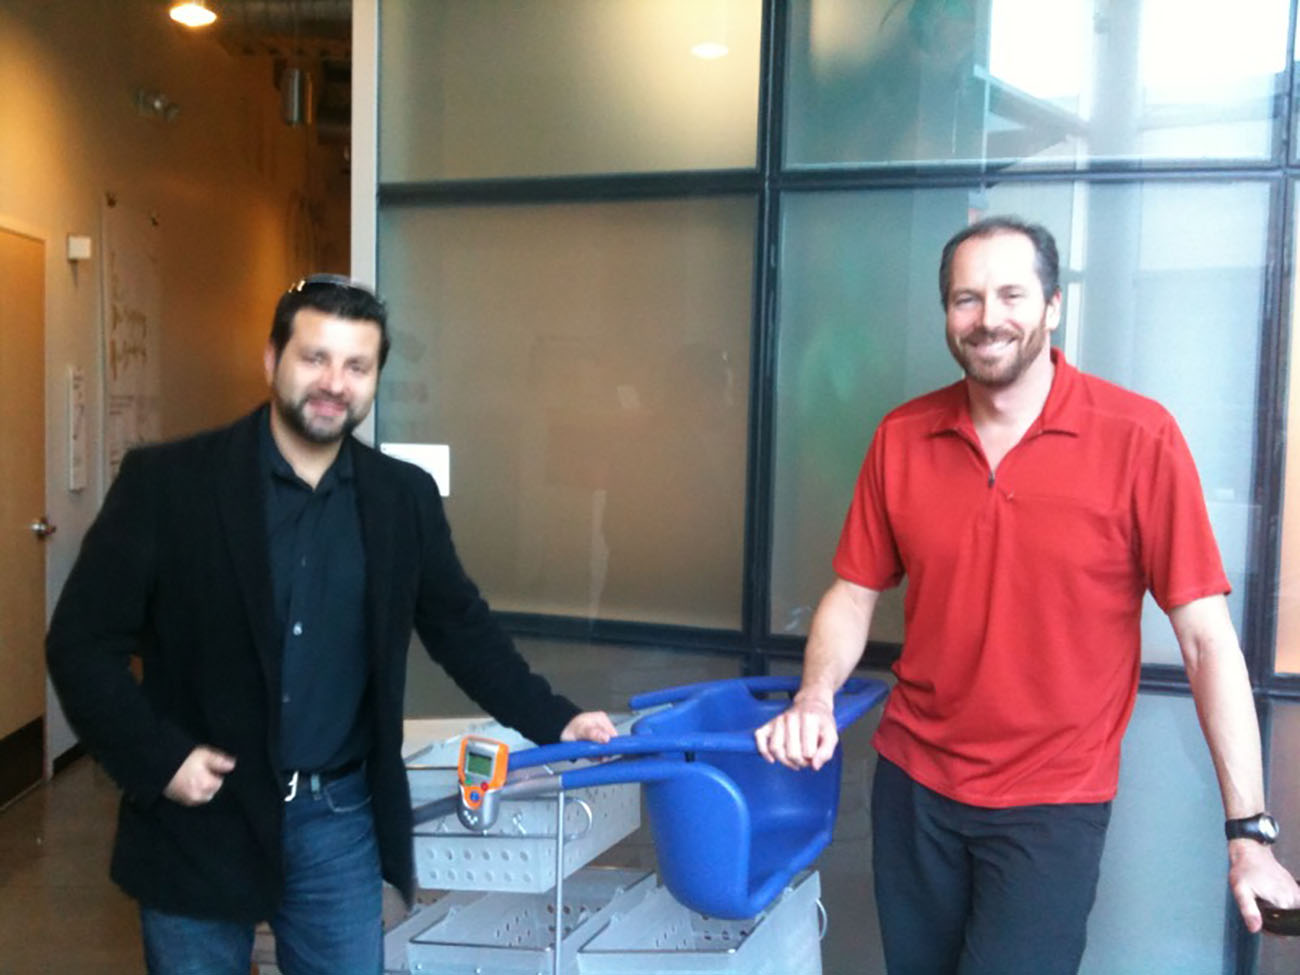 تُظهر الصورة اثنين من ممثلي IDEO الذكور وهم يقفون أمام الكاميرا مع نموذج عربة التسوق الجديدة التي قدمتها IDEO.